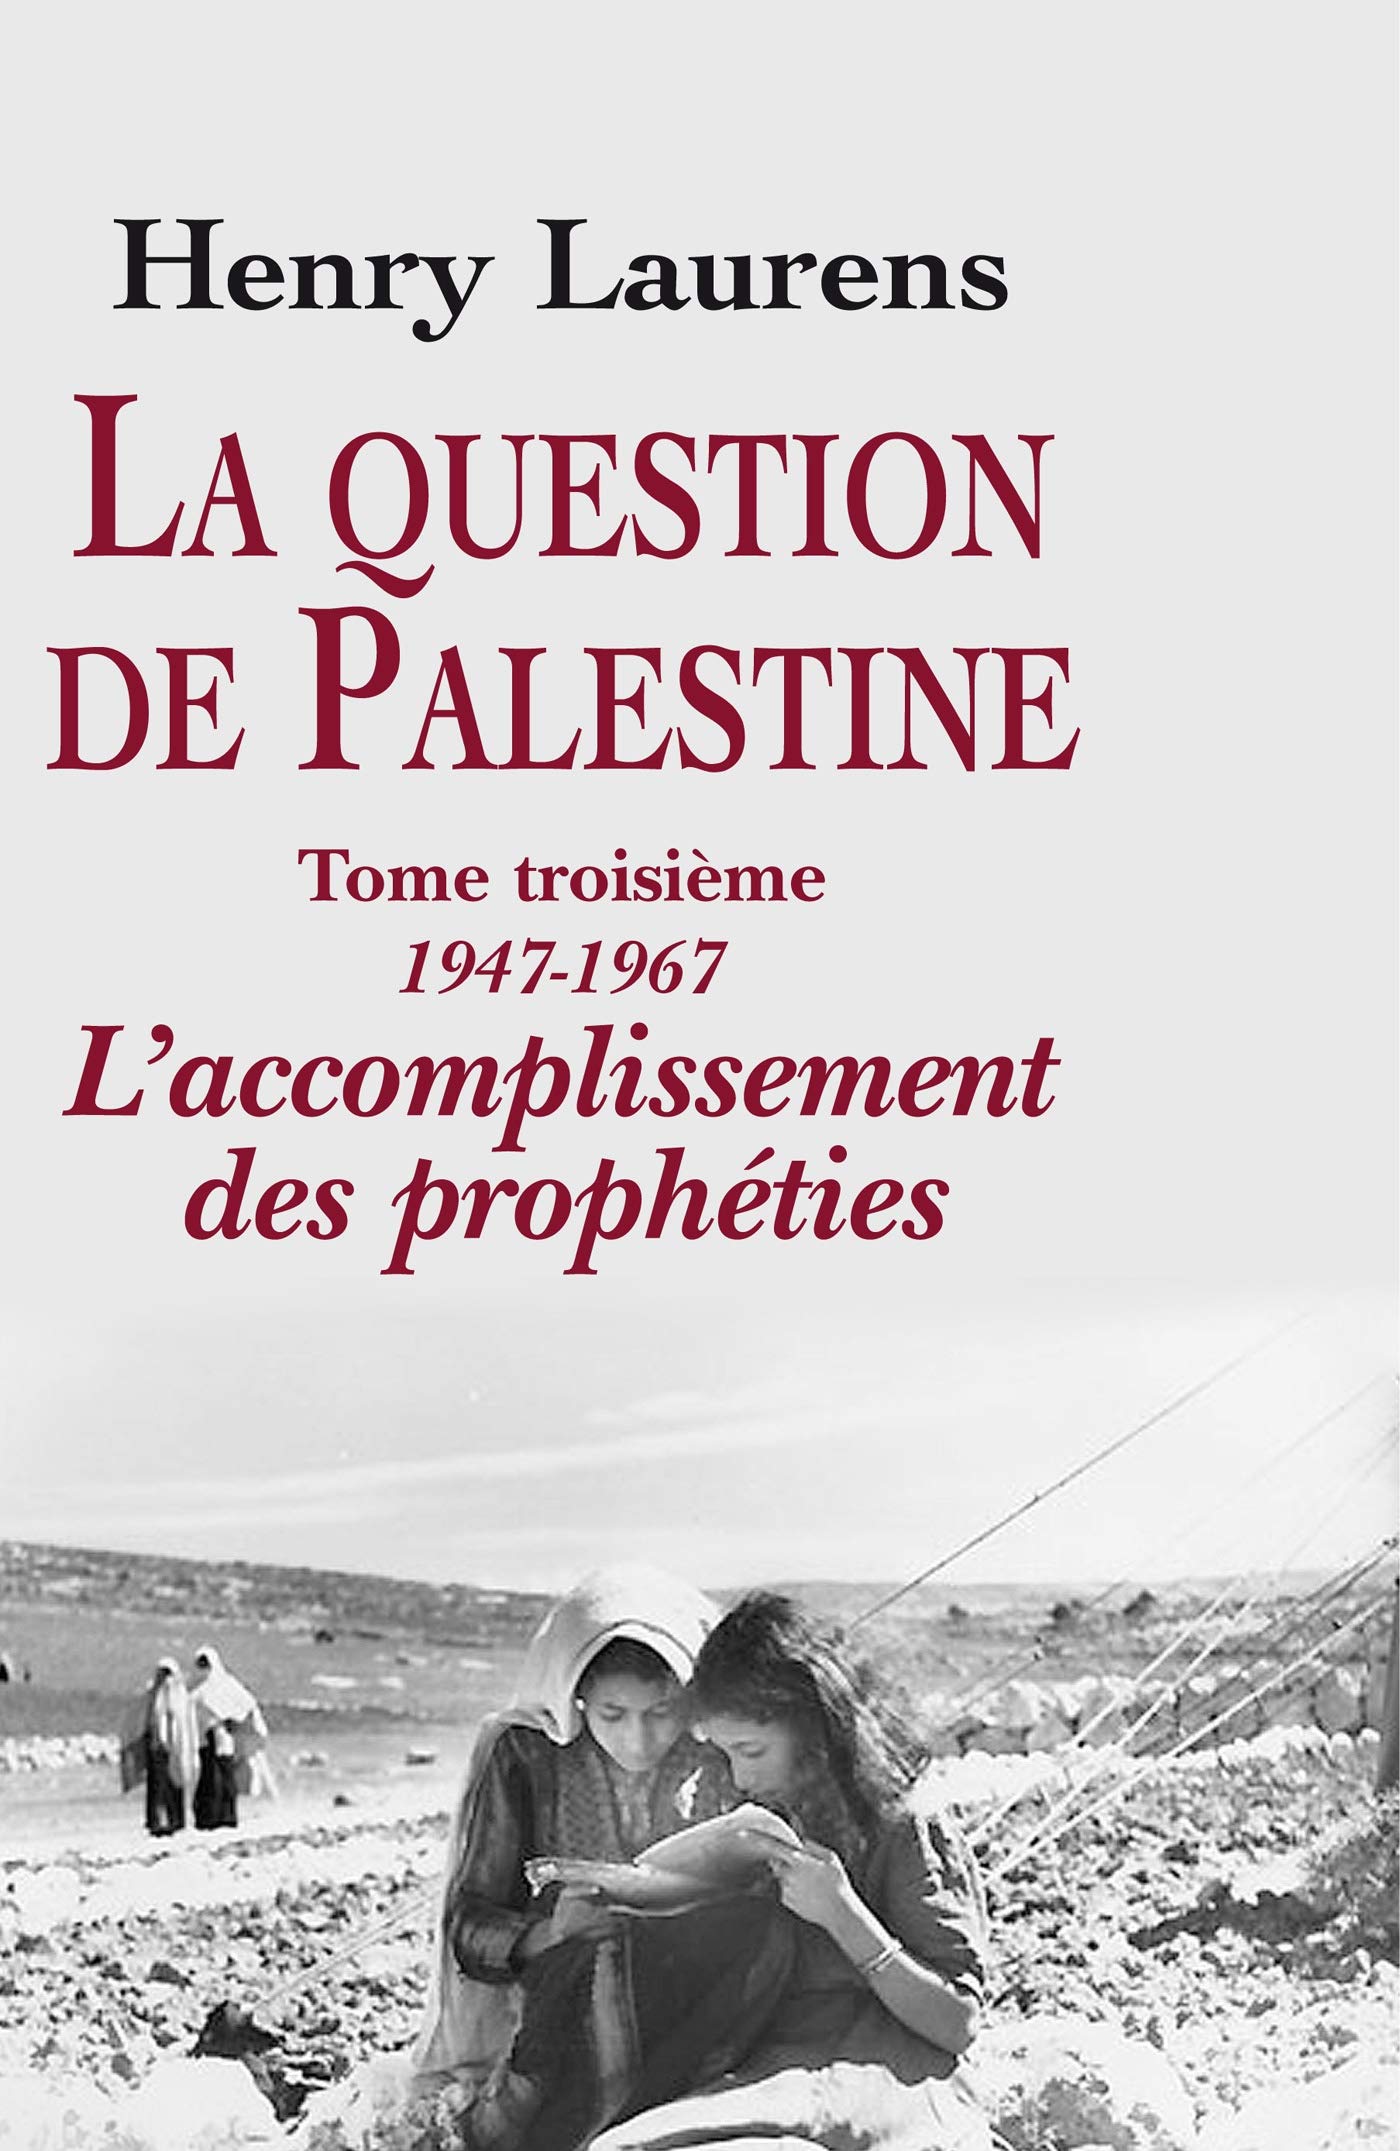 Henry Laurens – La question de Palestine